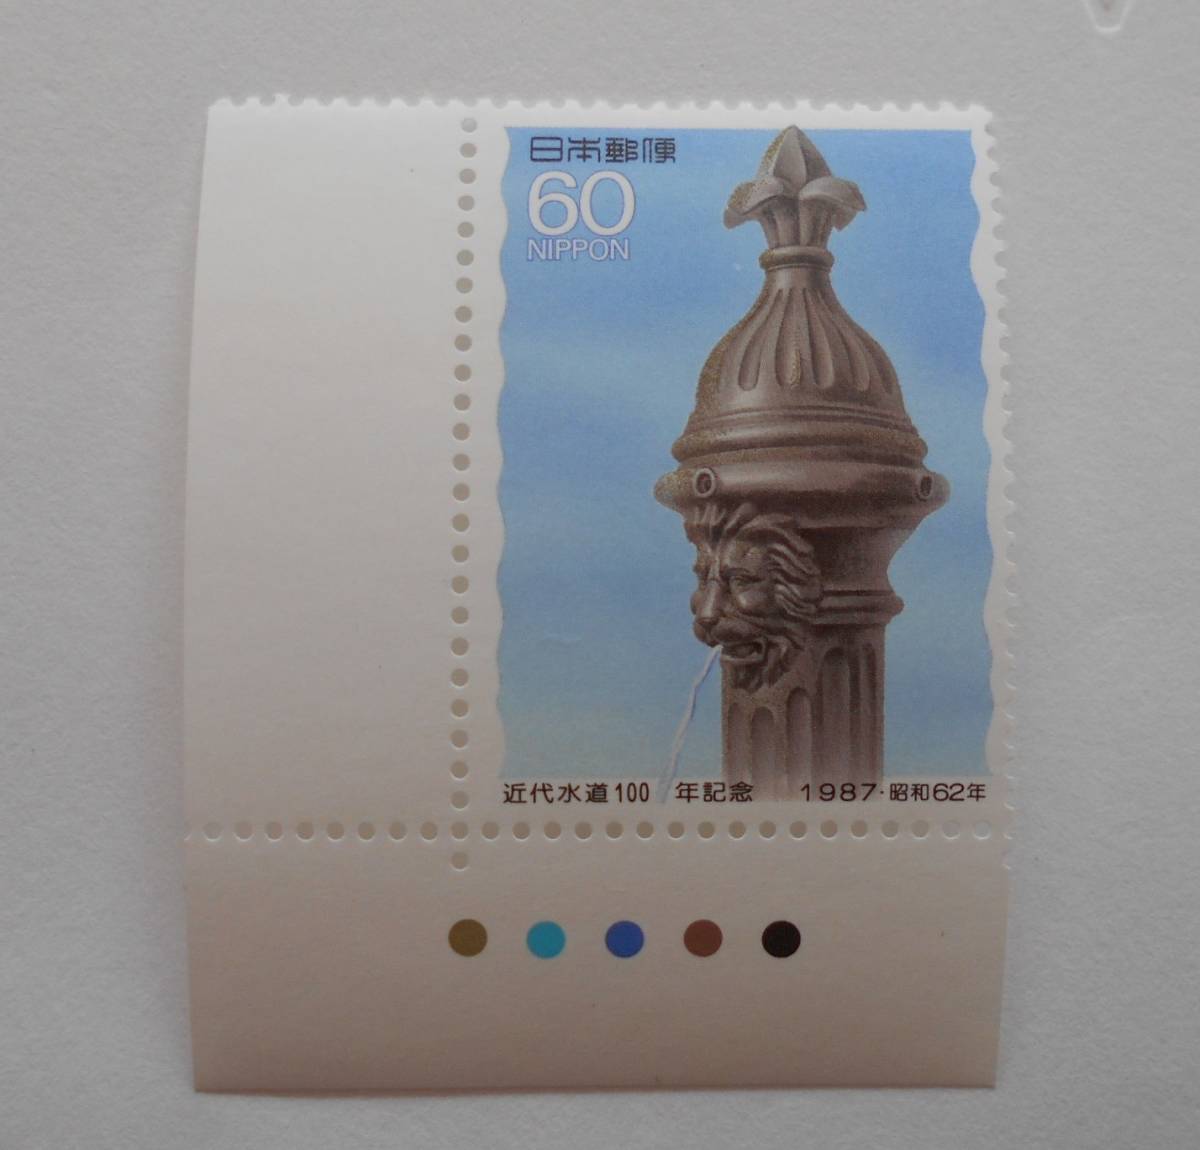 カラーマーク付き近代水道100年記念　1987　未使用60円切手_画像1